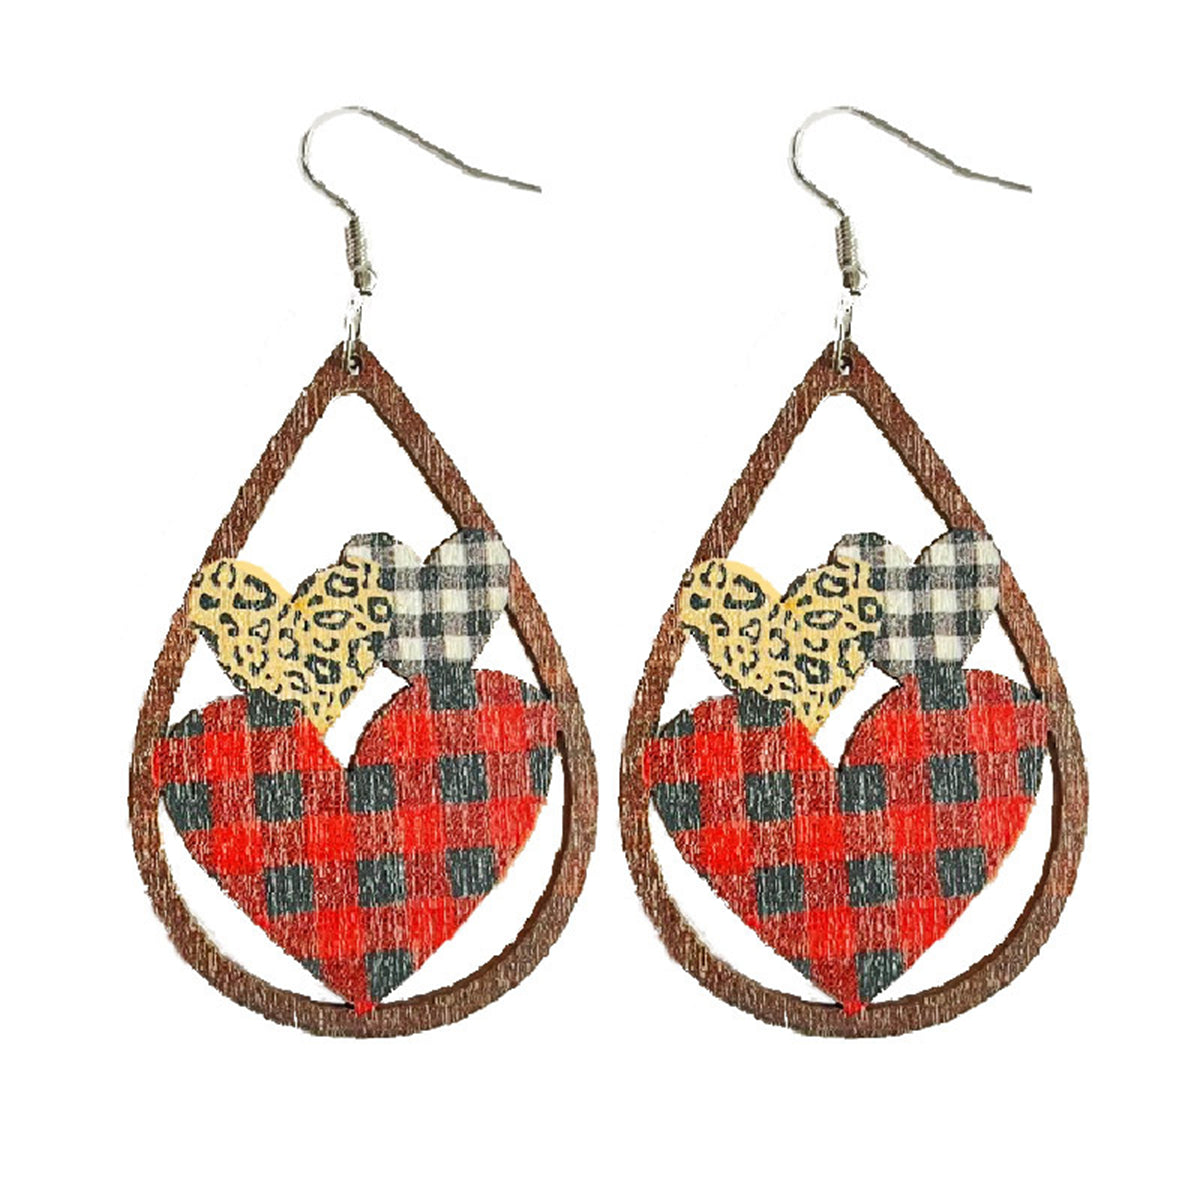 Red & Brown Wood Plaid Hearts Openwork Teardrop Earrings